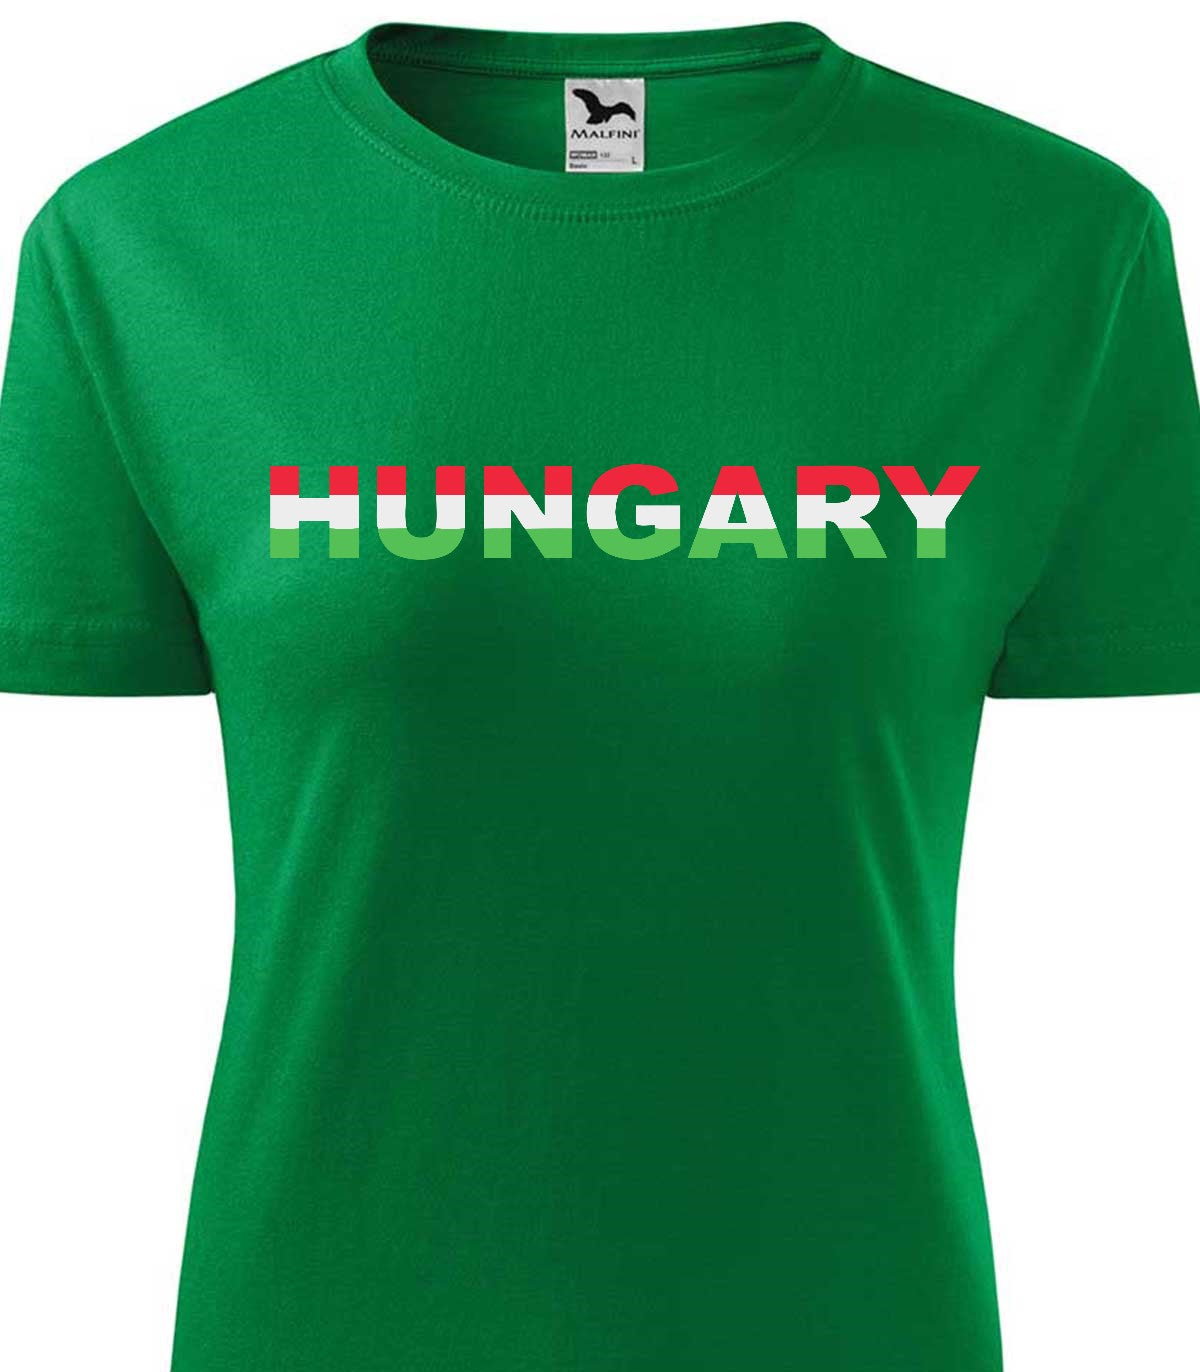 Magyarország 2 női póló